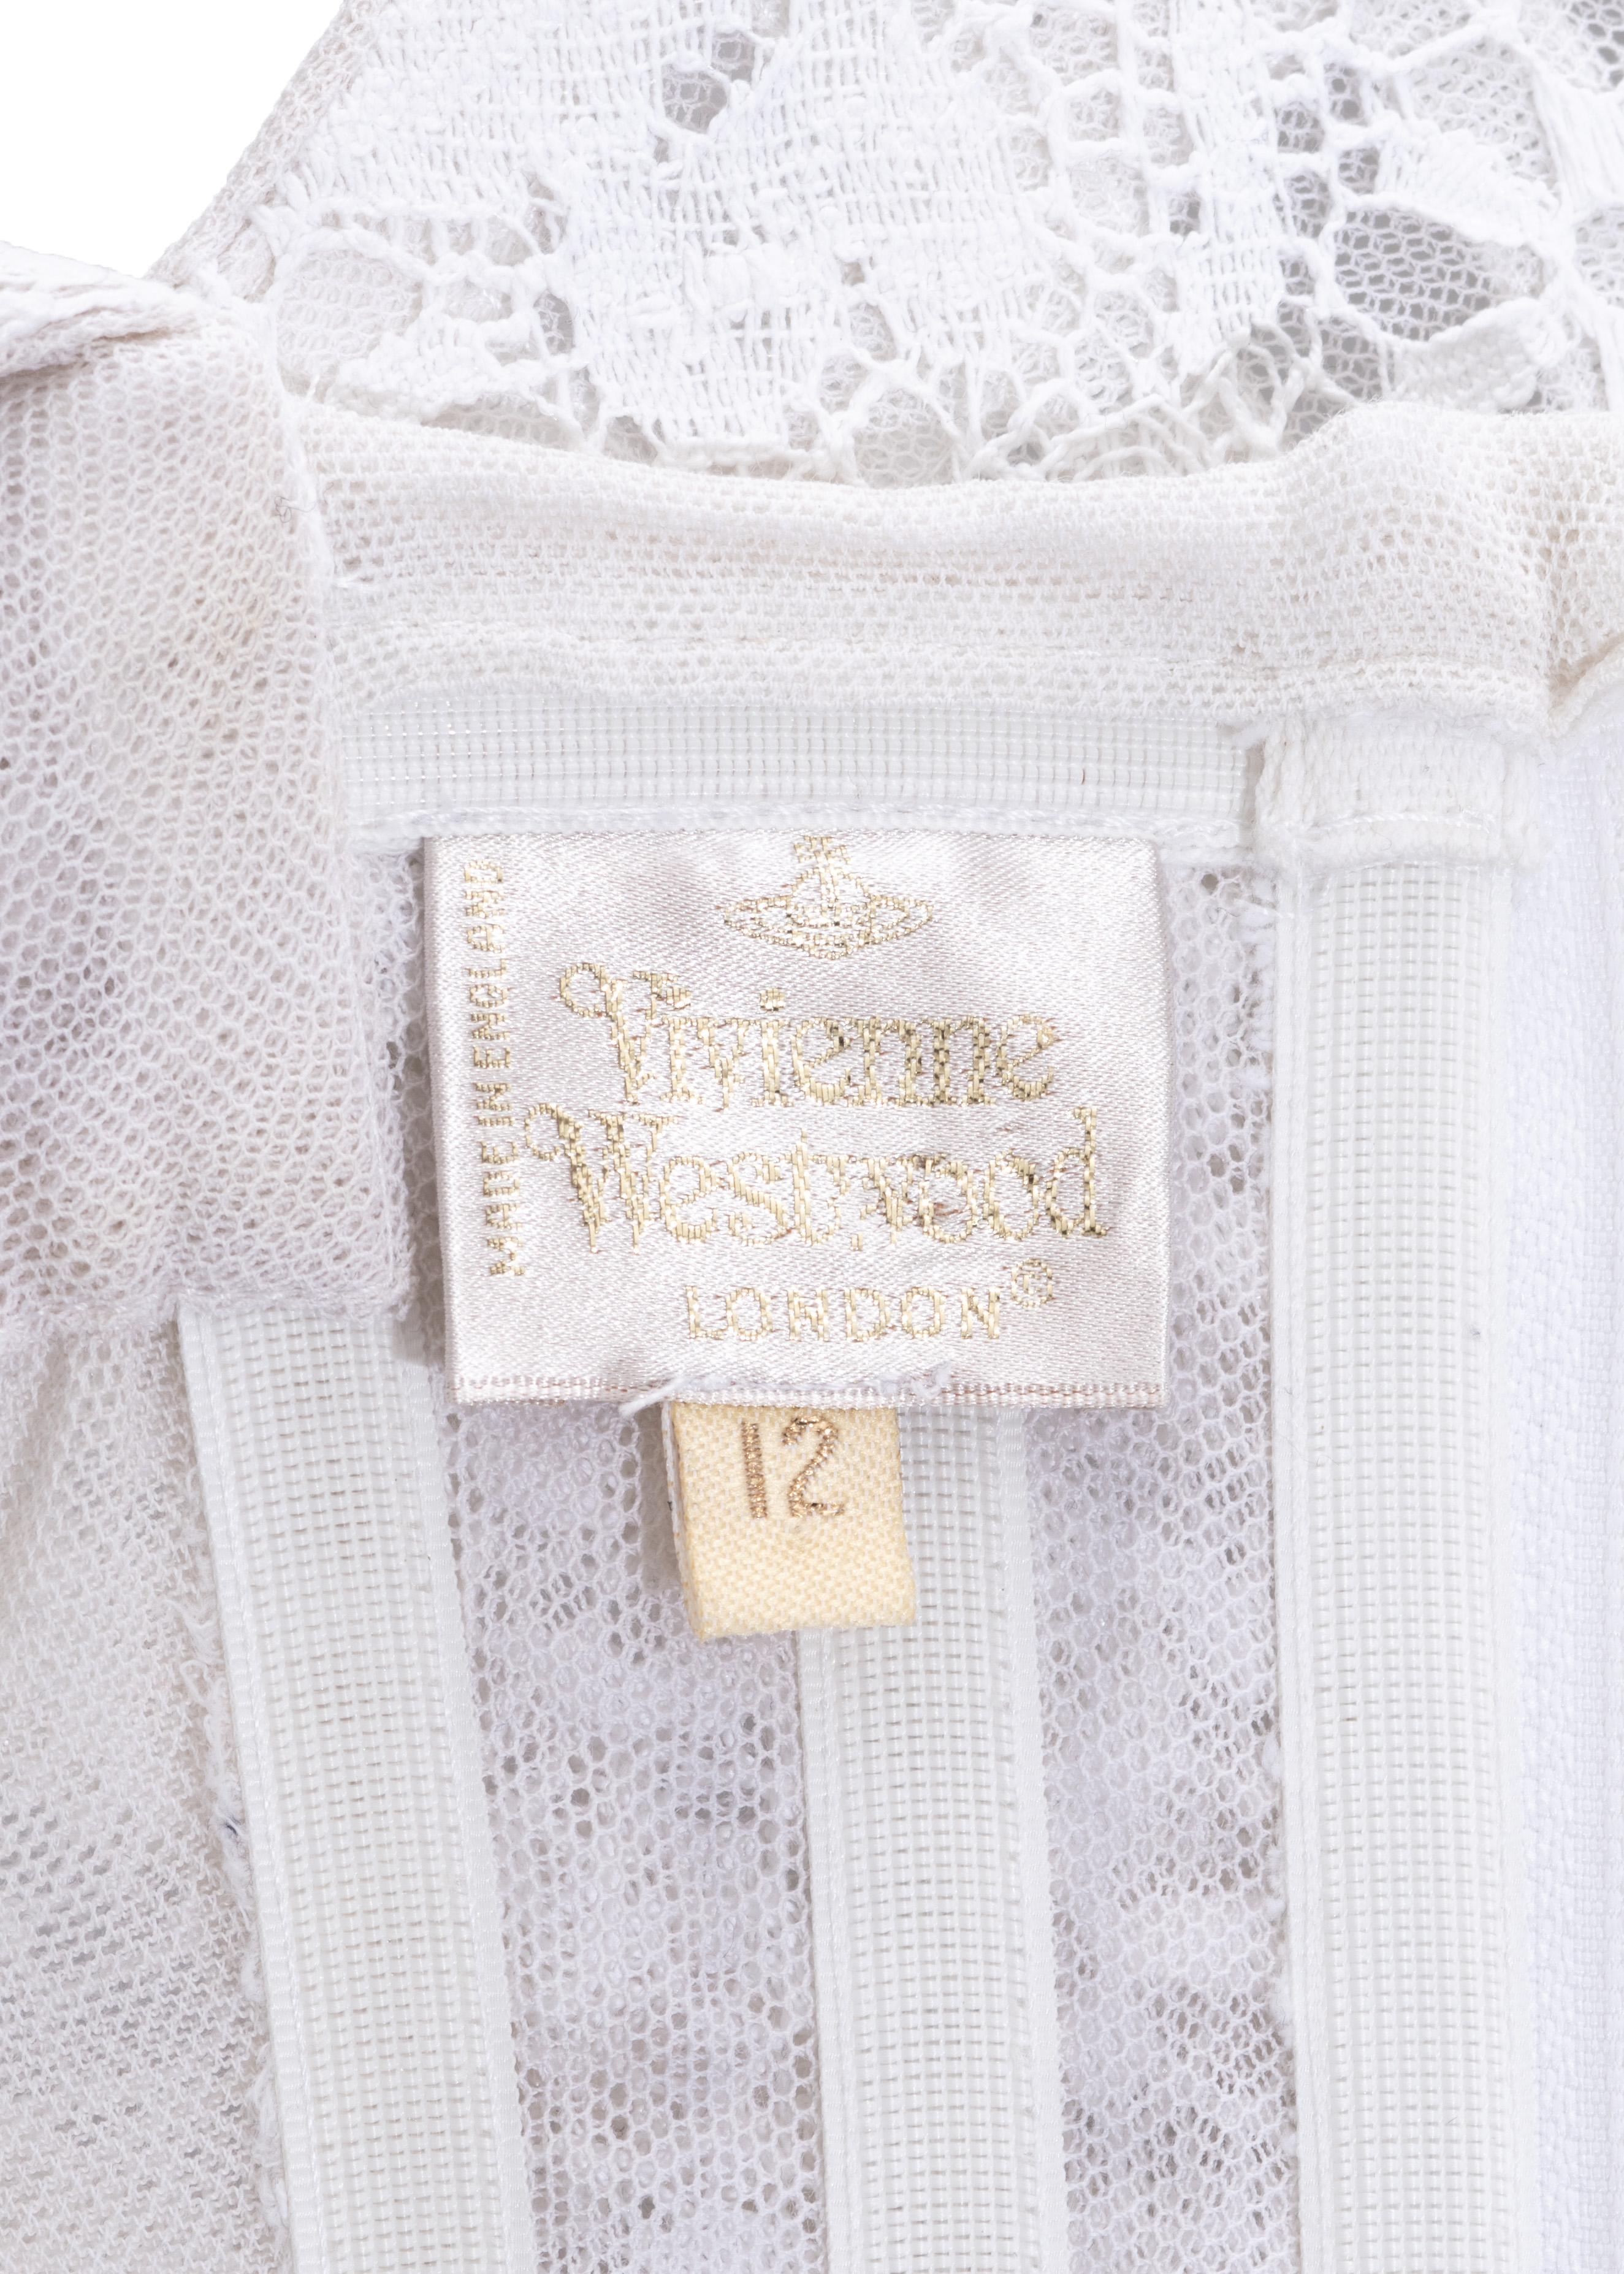 Women's Vivienne Westwood white cotton lace corset, fw 1994